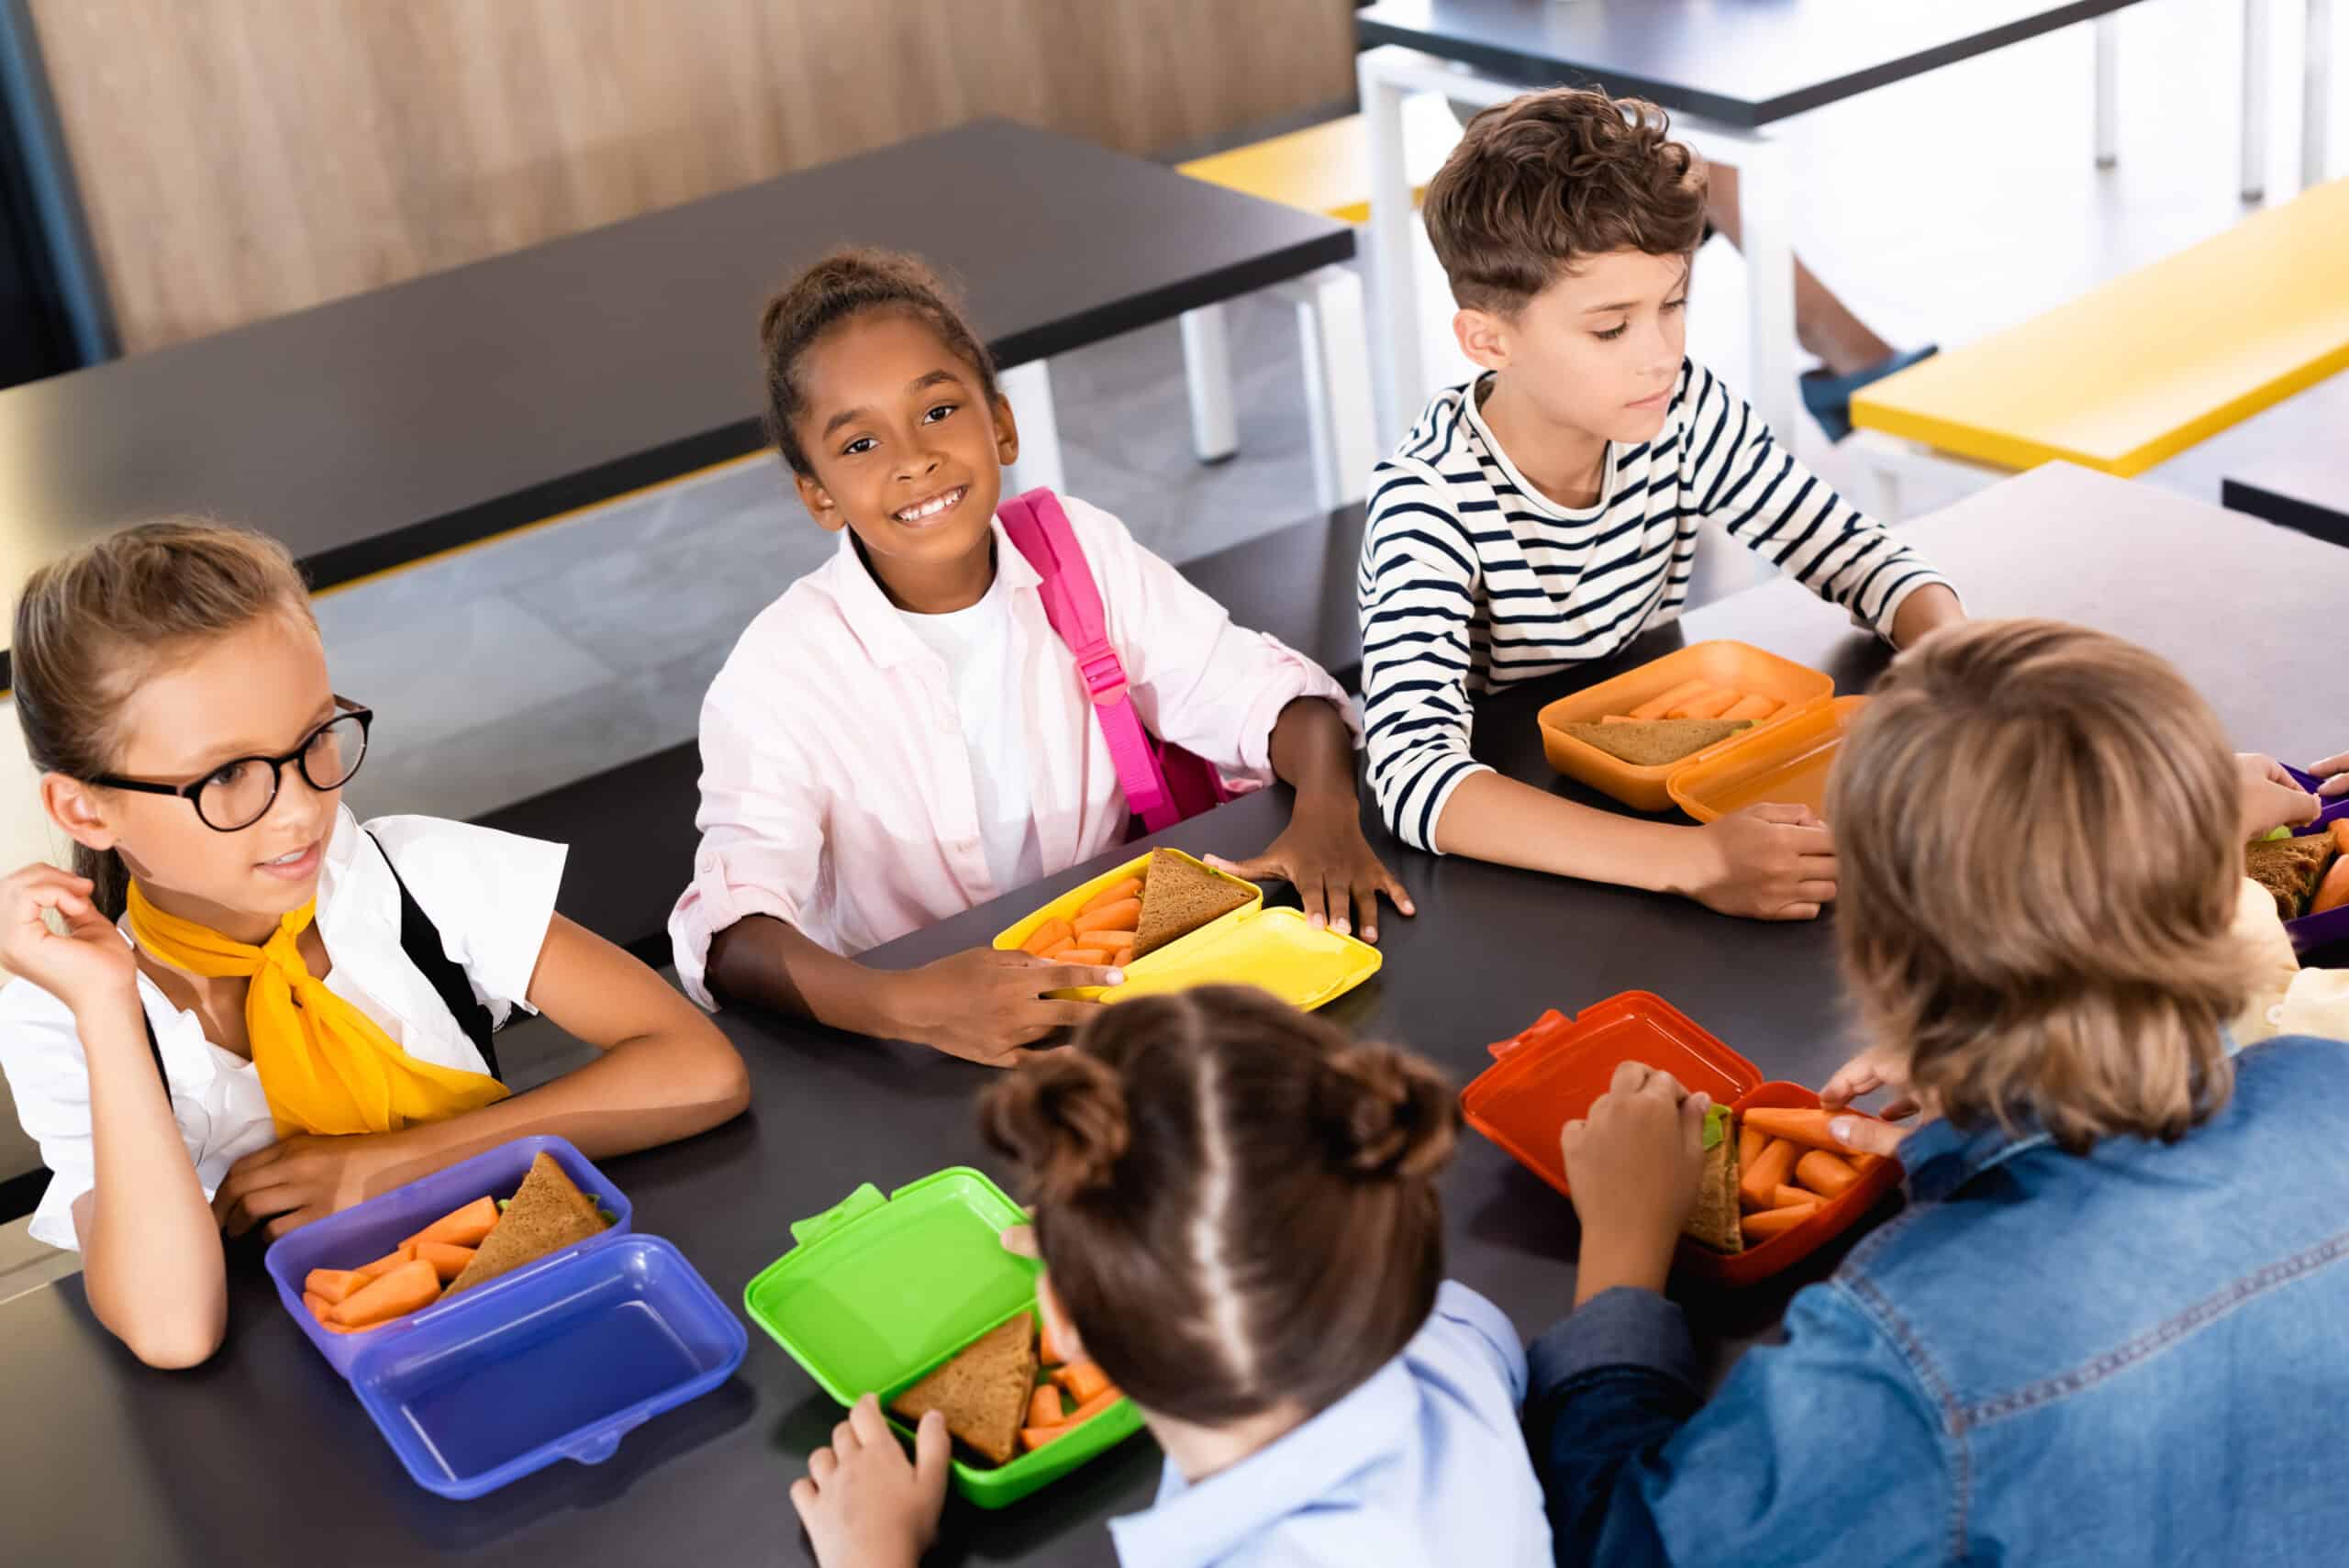 6 kinderen die in een schoolkantine brood en worteltjes eten uit hun eigen felgekleurde trommeltje. Deze leerlingen zitten in de schoolkantine.